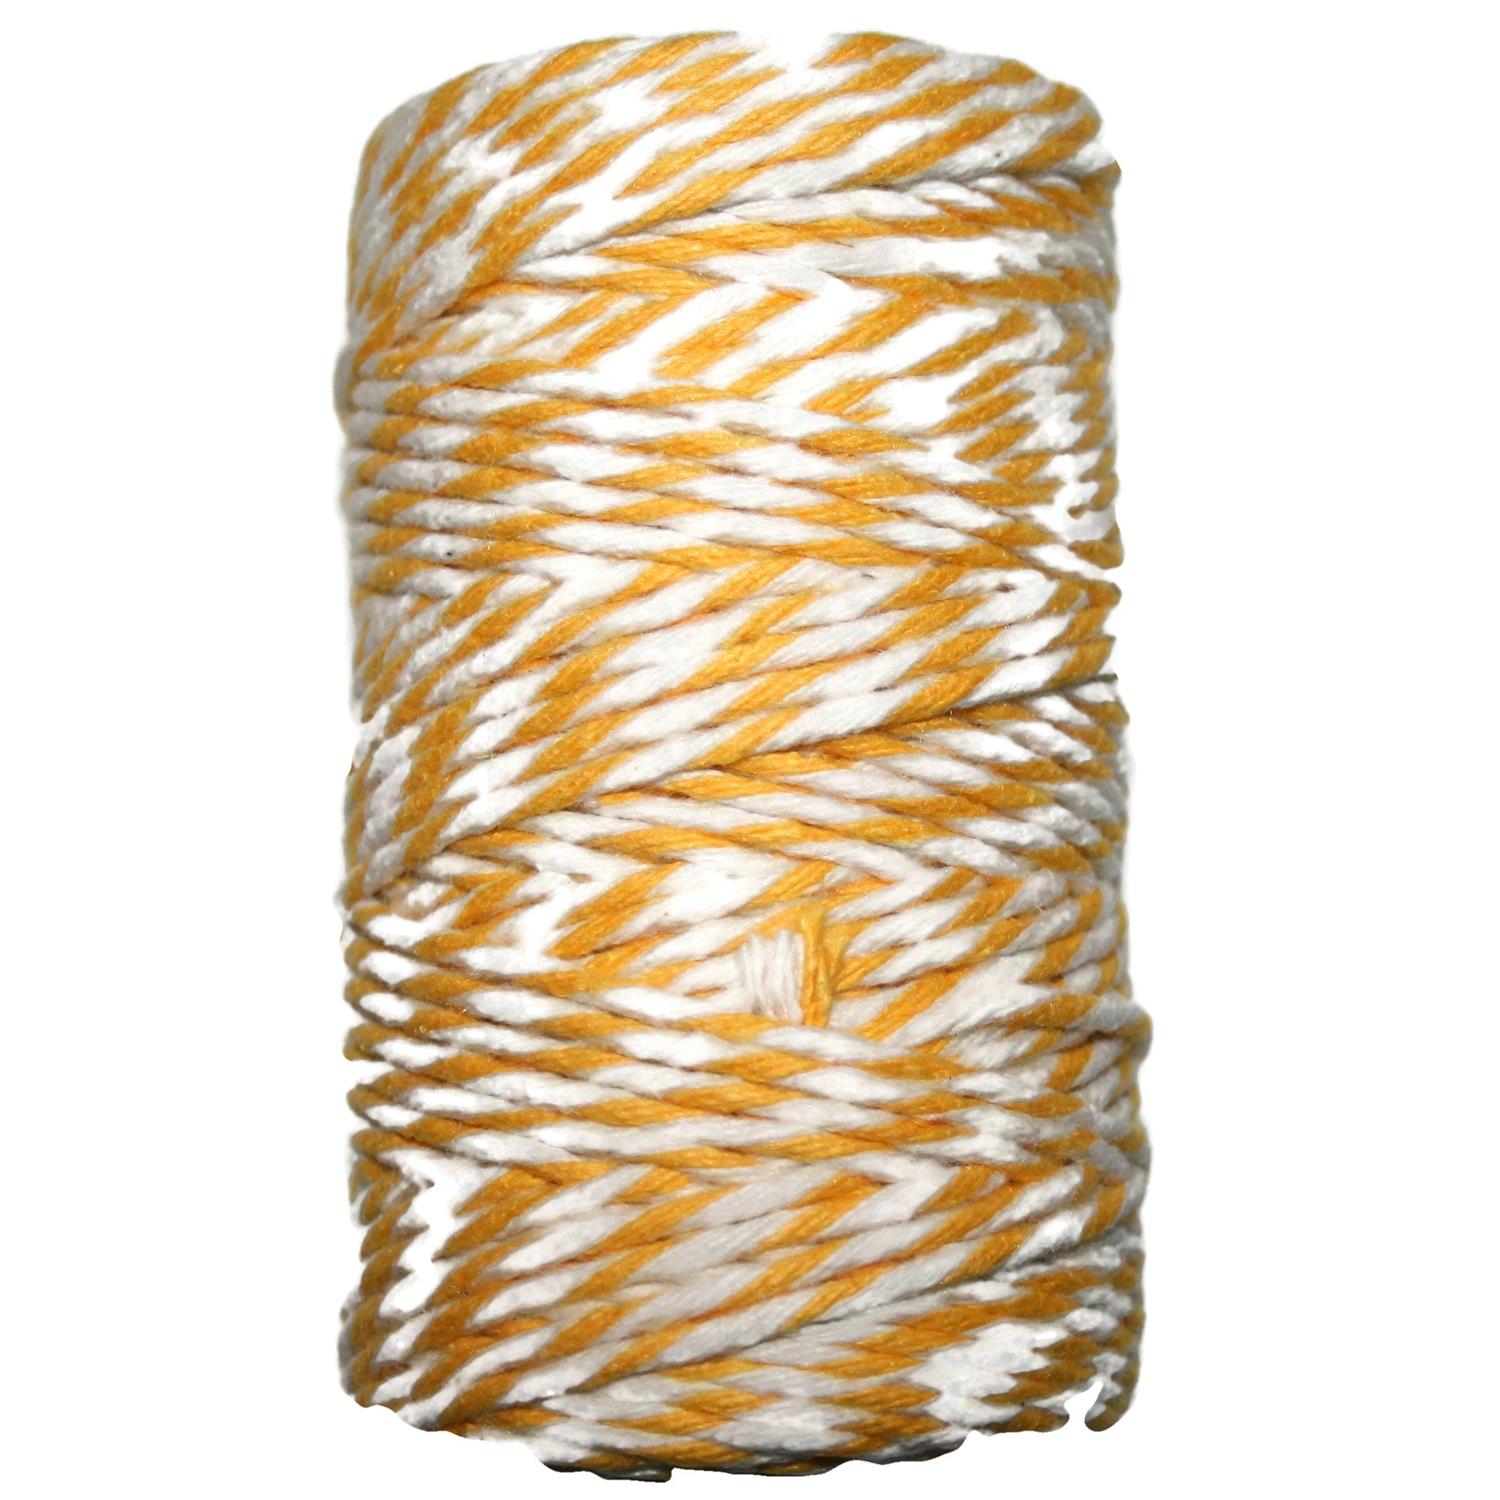 Baumwollschnurr 100g 3mm Ø mit Kern in 5 Farben gelb